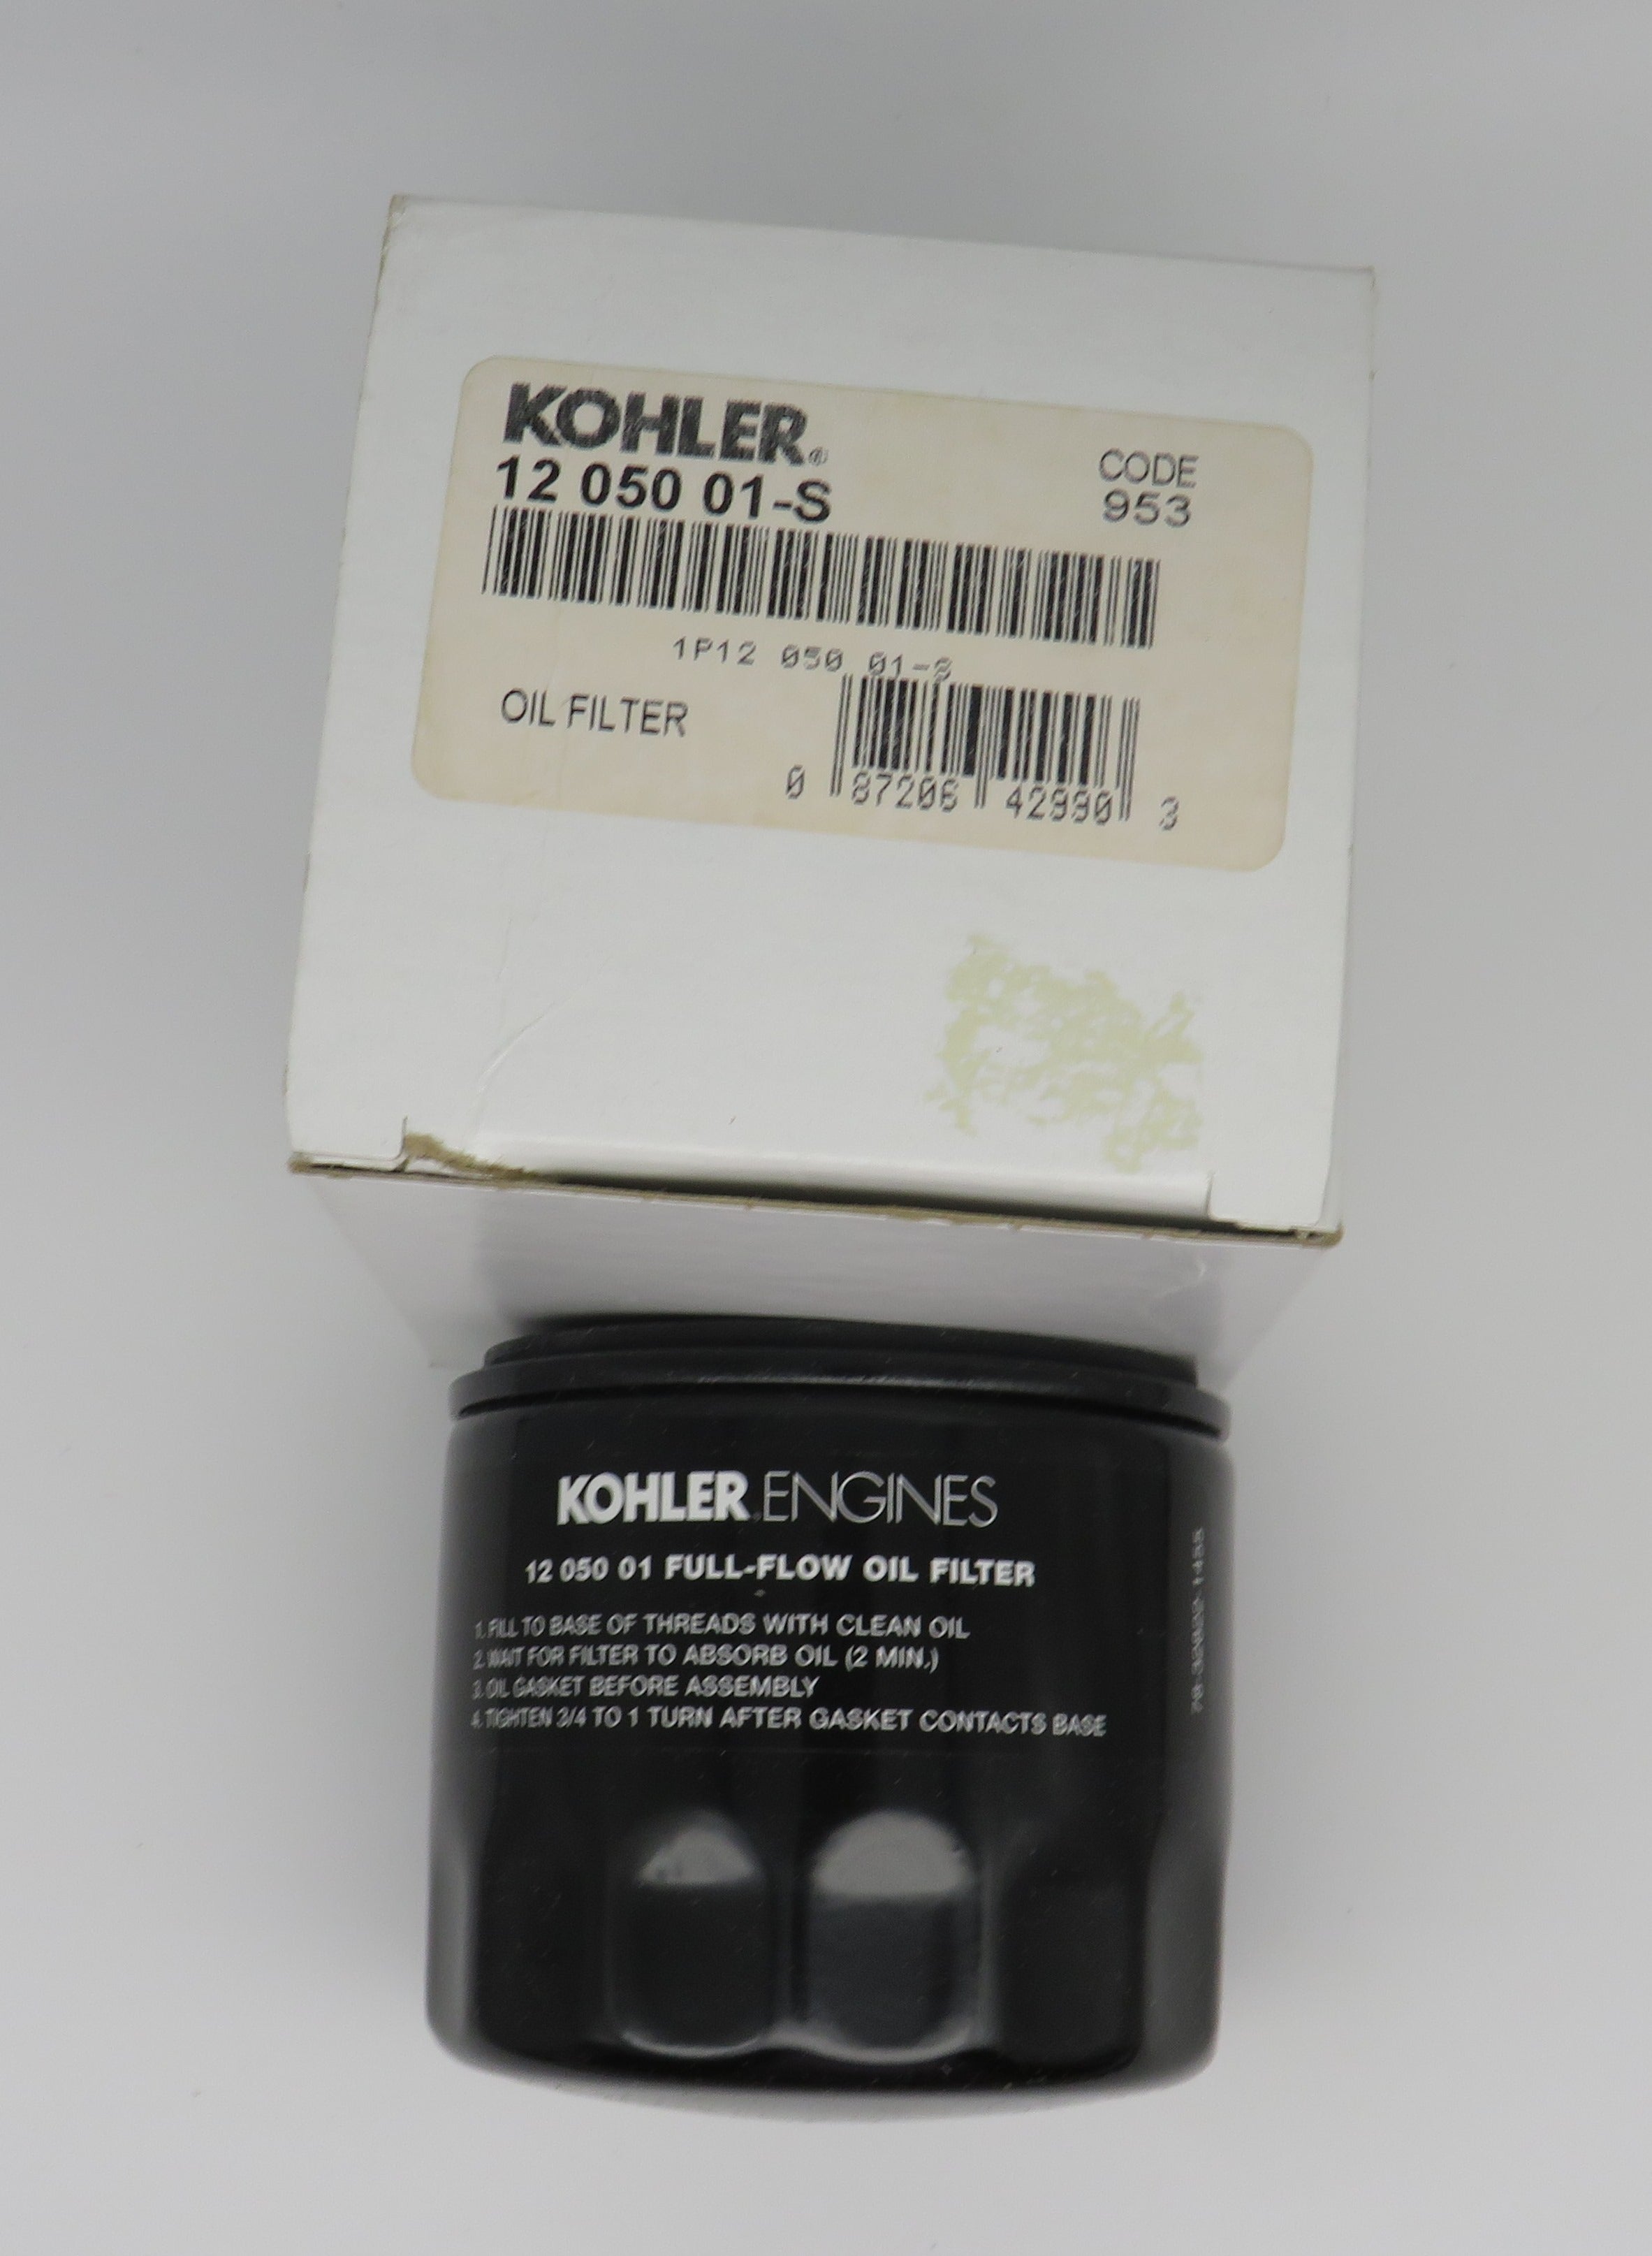 12 050 01-S Kohler Oil Filter